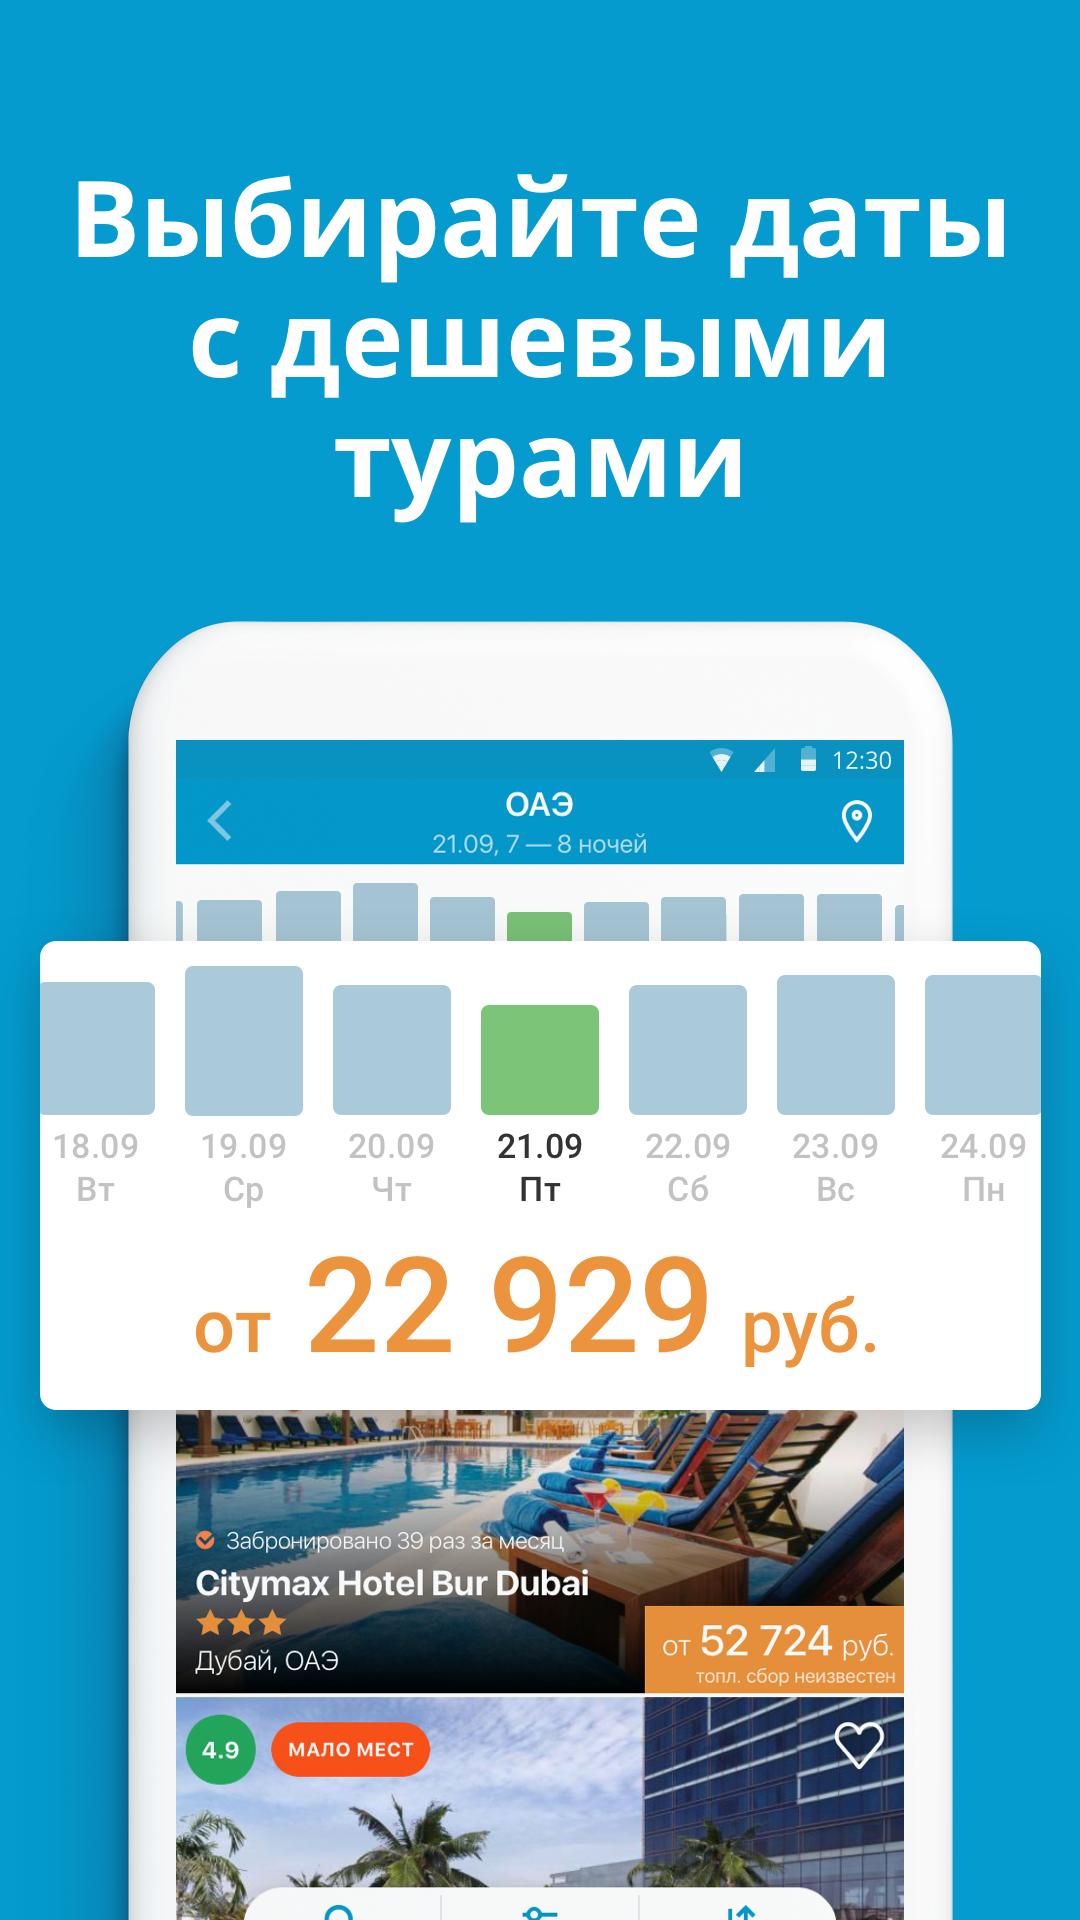 Travelata.ru Все горящие туры и путевки онлайн 3.6.7 Screenshot 4